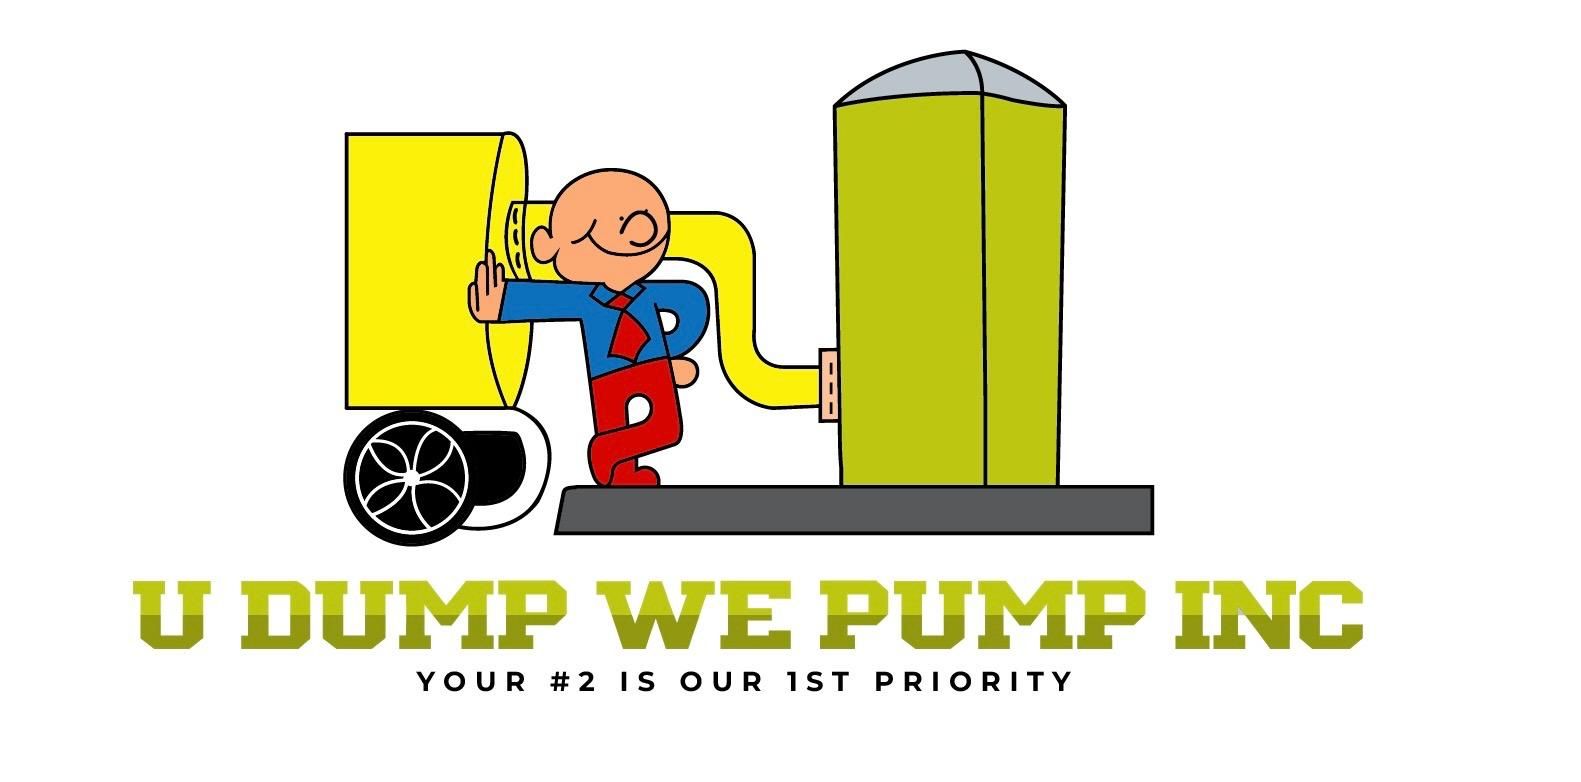 U Dump We Pump